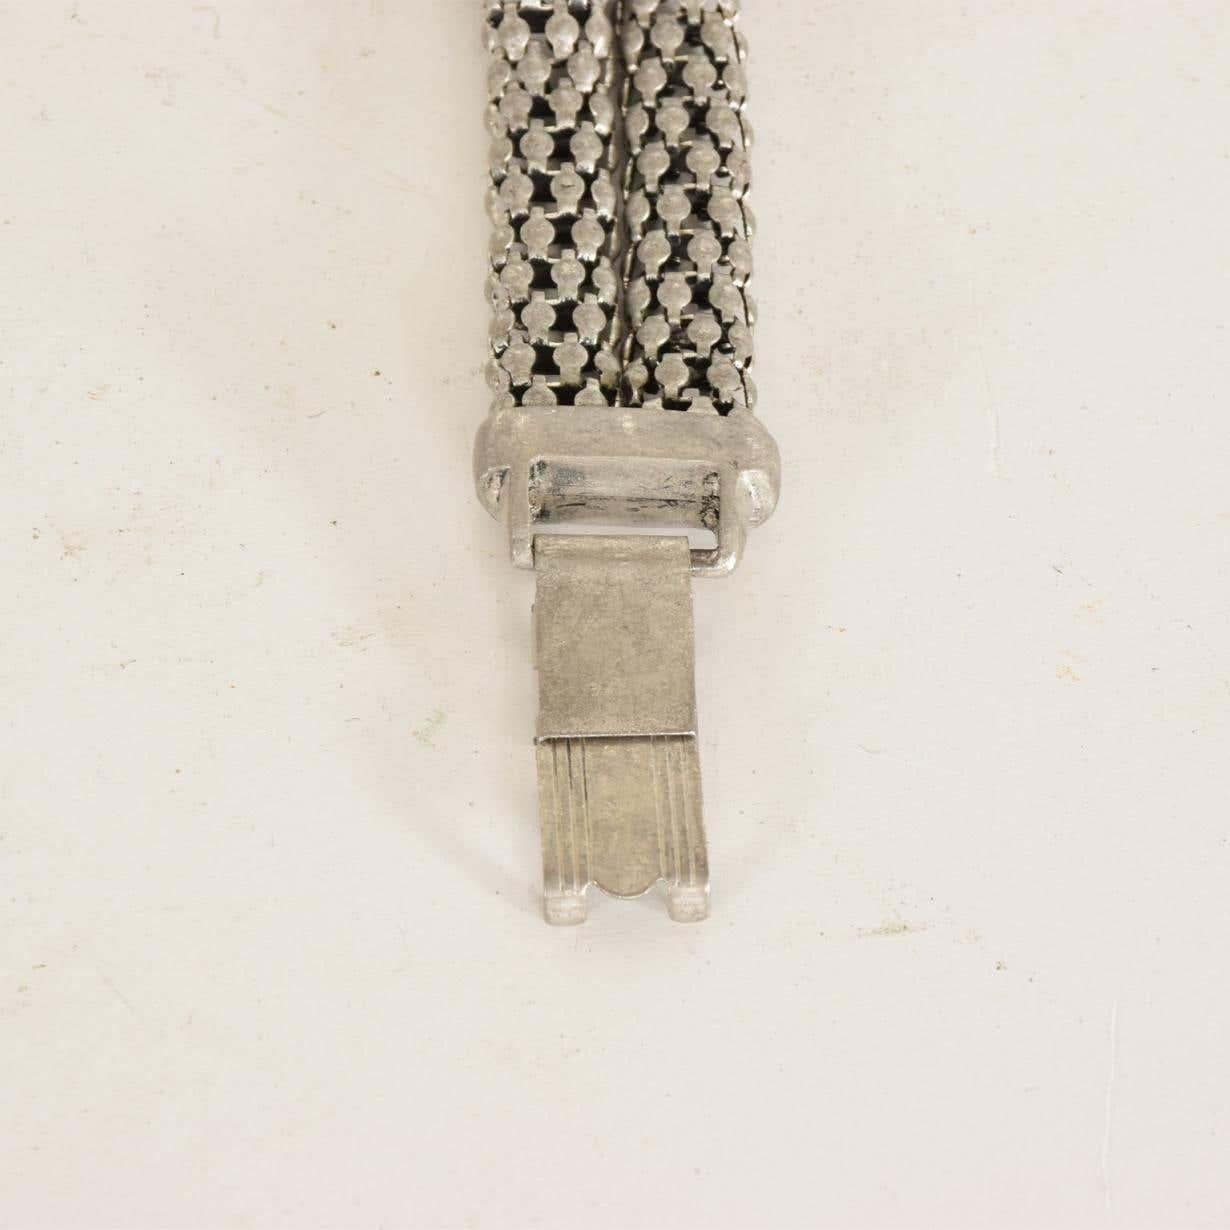 Art Deco Zeitraum skulpturale Aluminium verdreht Französisch Kabel Armband, 1940er Jahre.
Fabelhaftes skulpturales modernistisches Design, doppelreihiger breiter Bandknoten
Im Stil des zeitgenössischen Designers David Yurman sind die Kabel klassisch